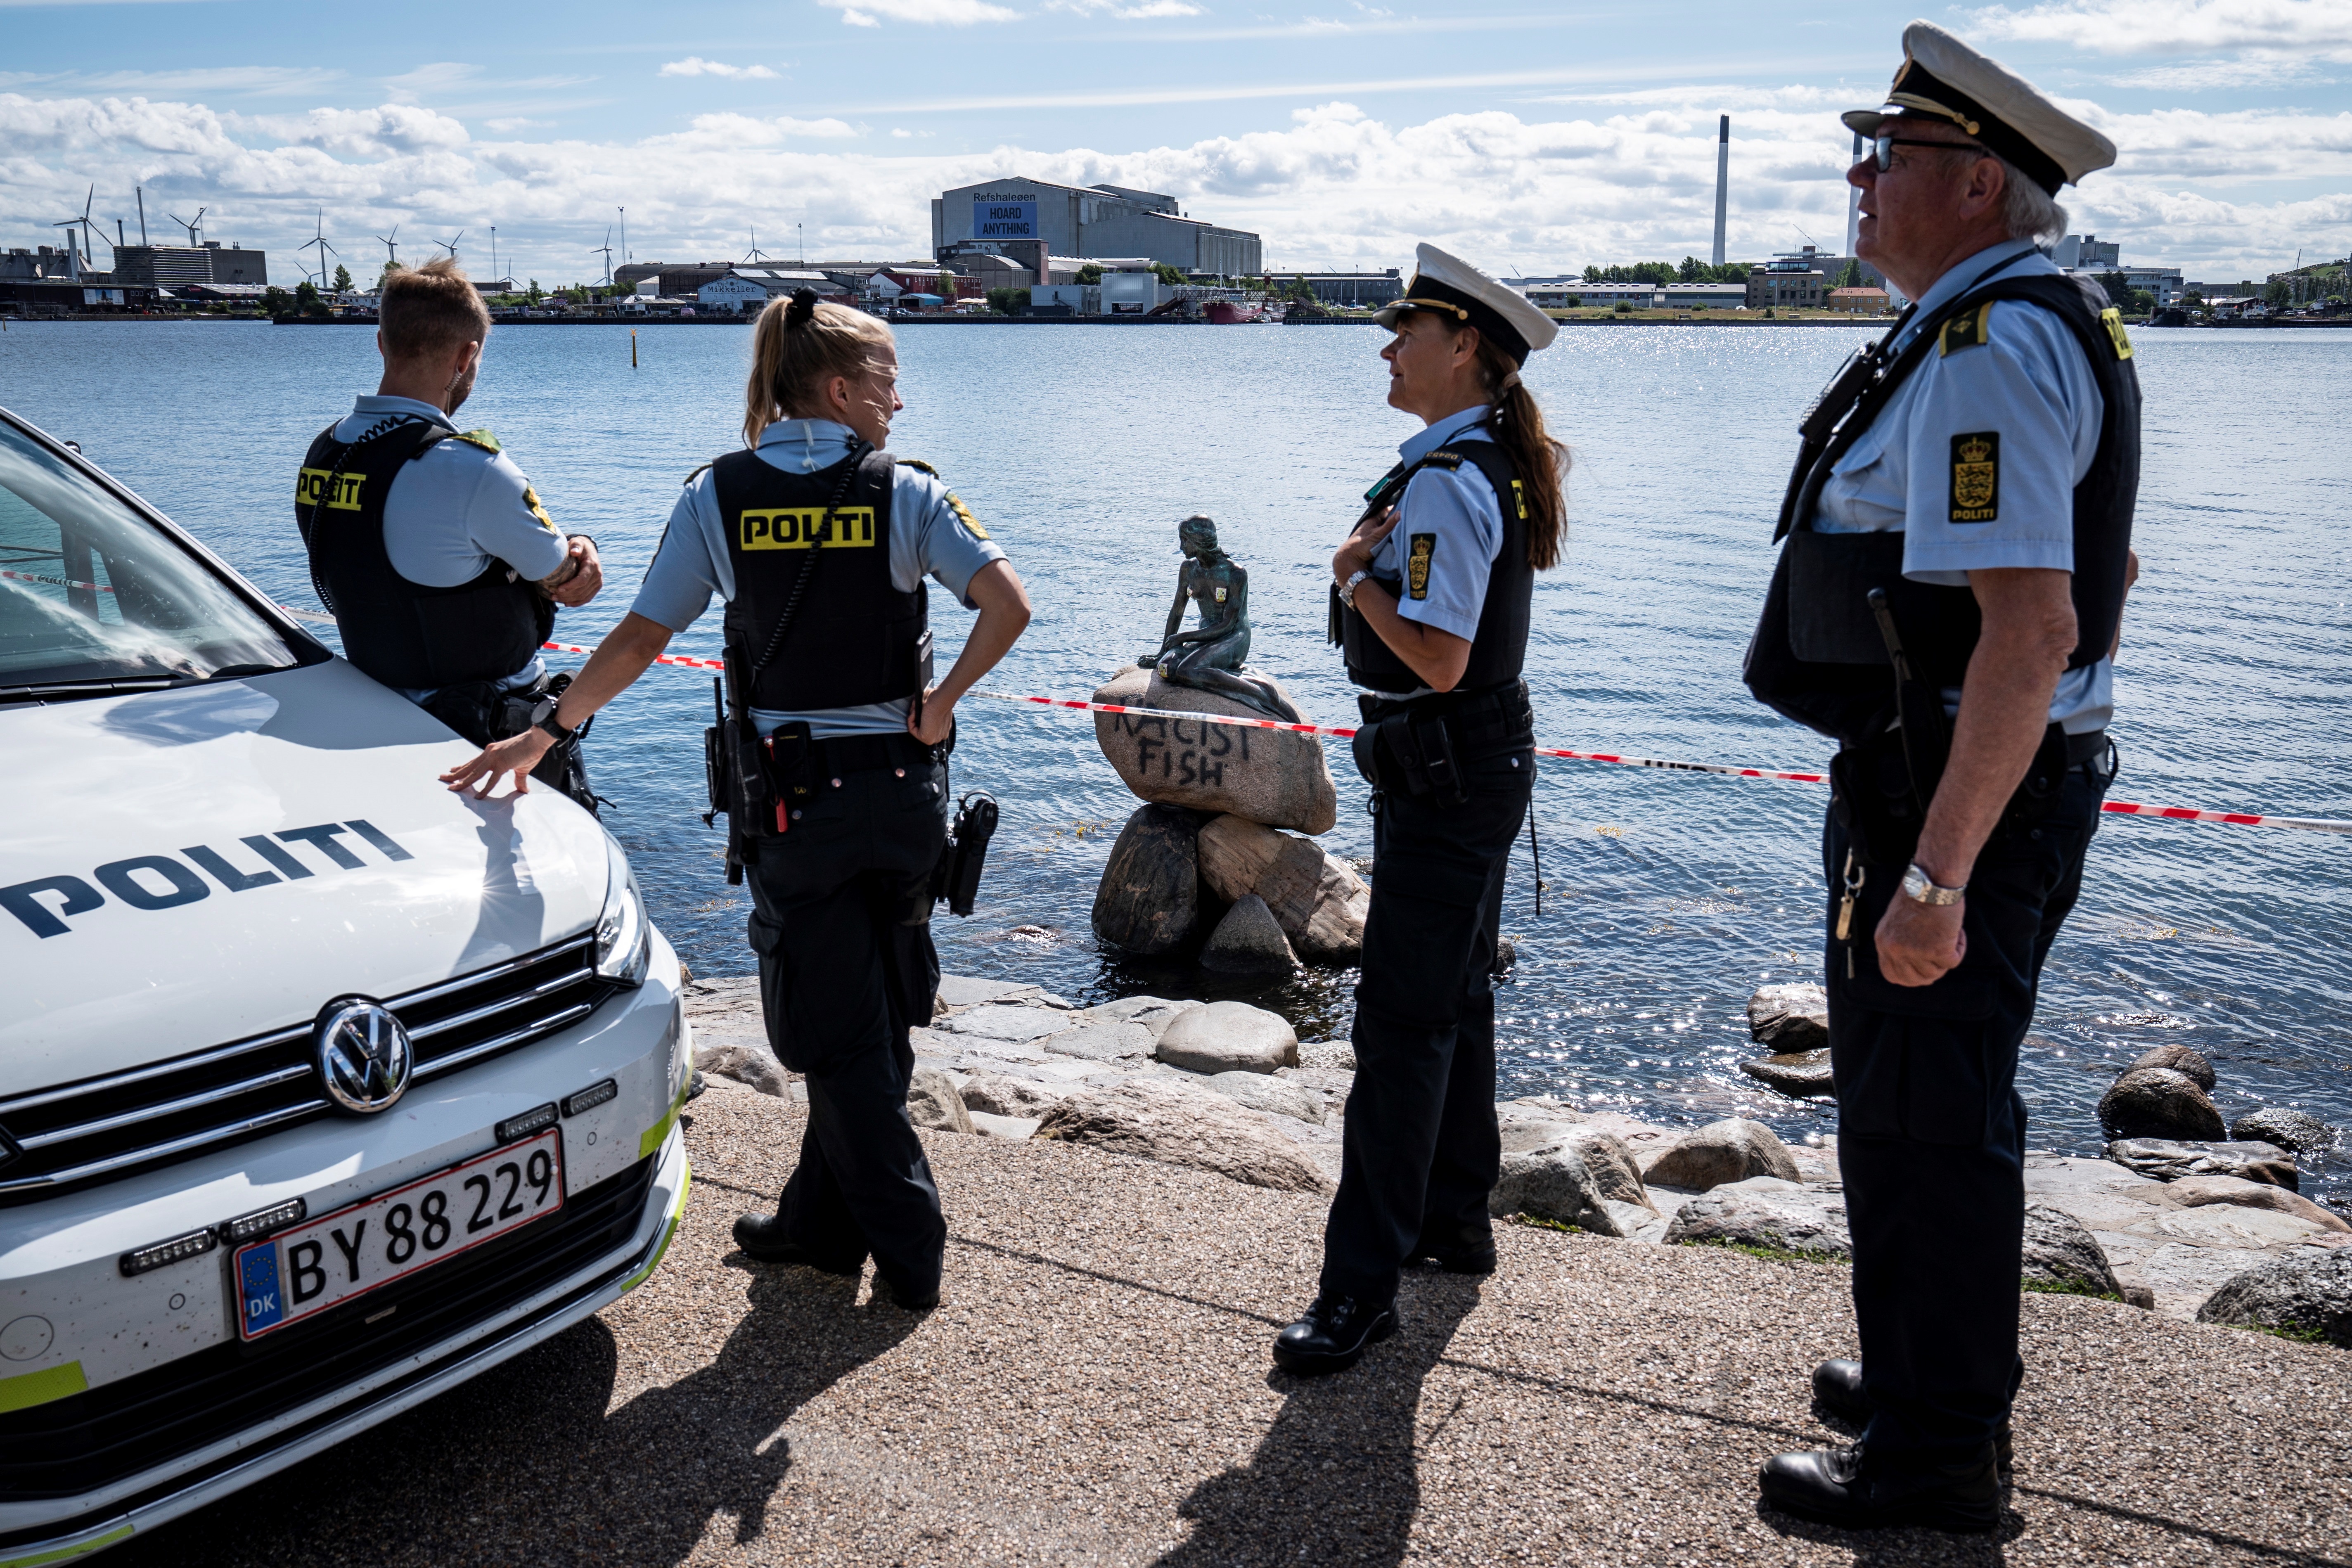 Vándalos atacaron la estatua de la Sirenita de Copenhague dejando un “contundente” mensaje (FOTOS)